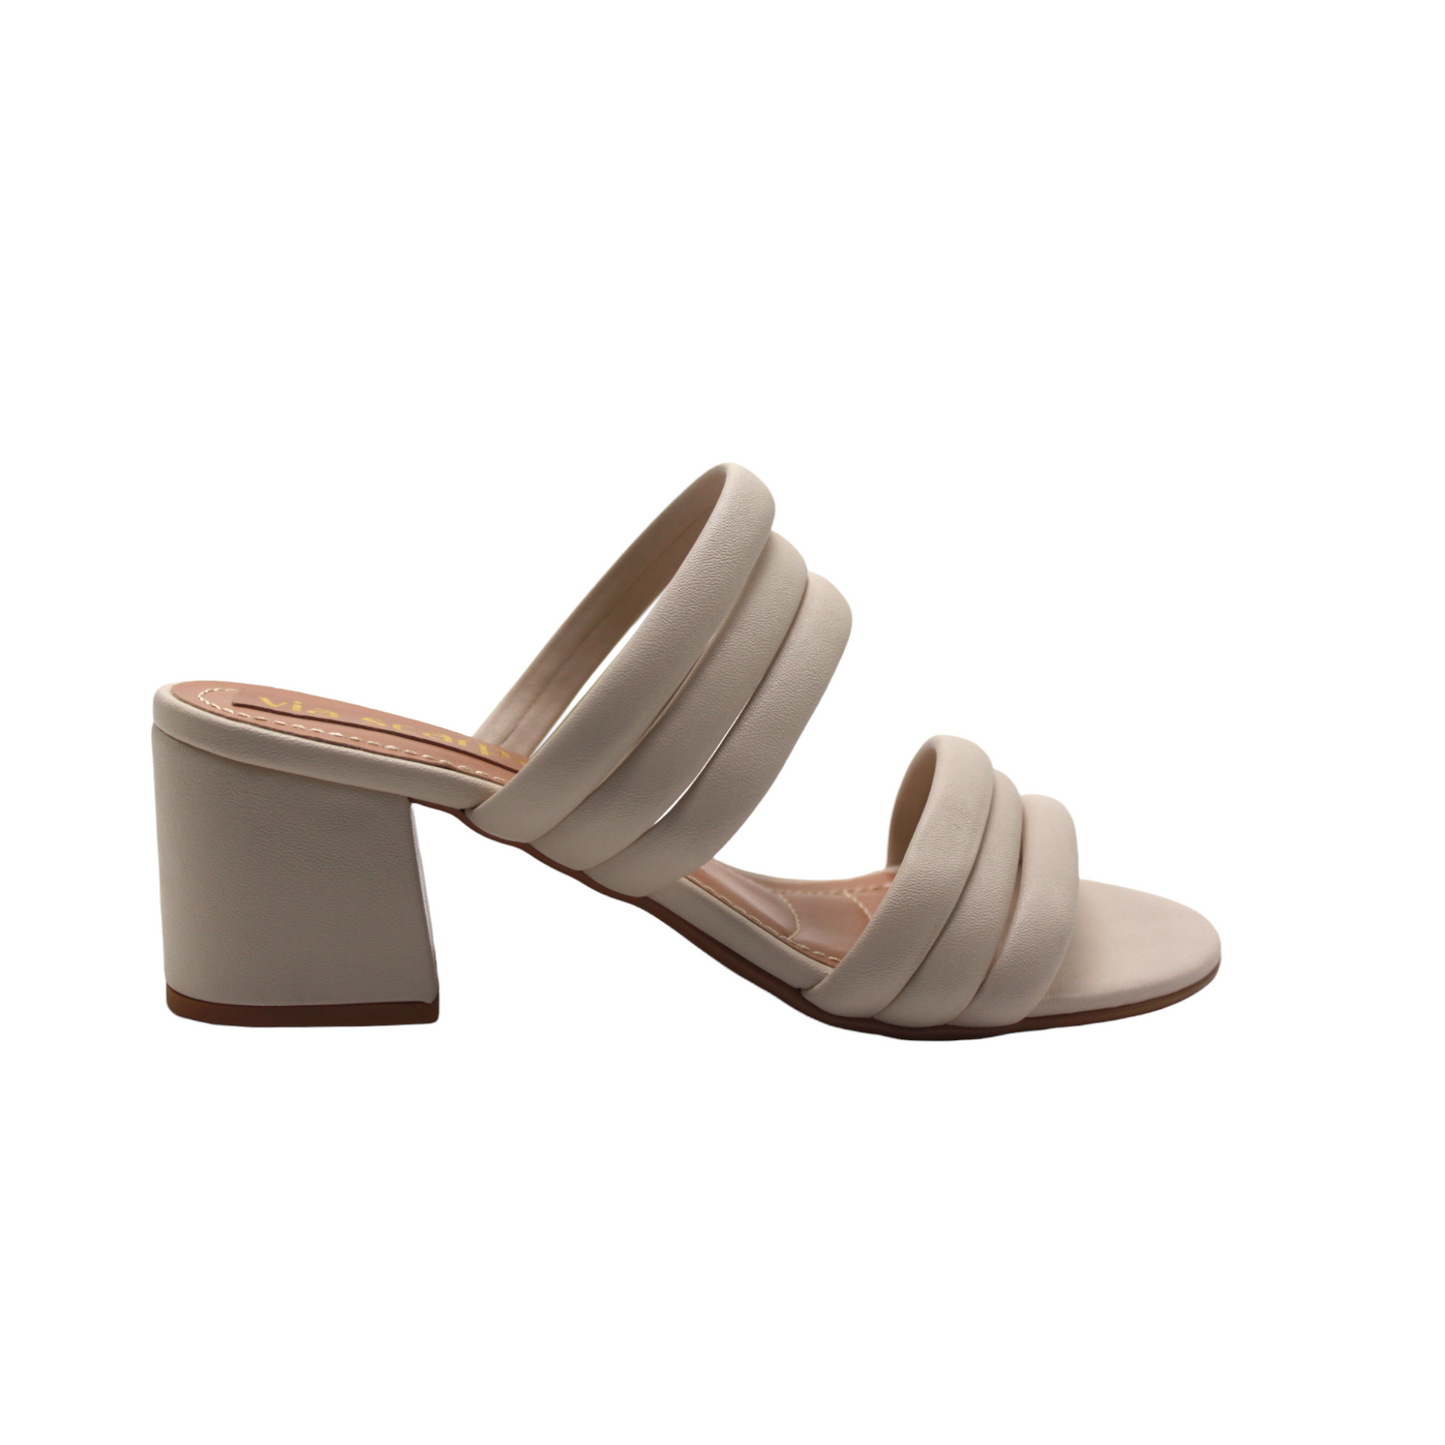 Strappy Off White Heeled Sandals - Julia & Santos 